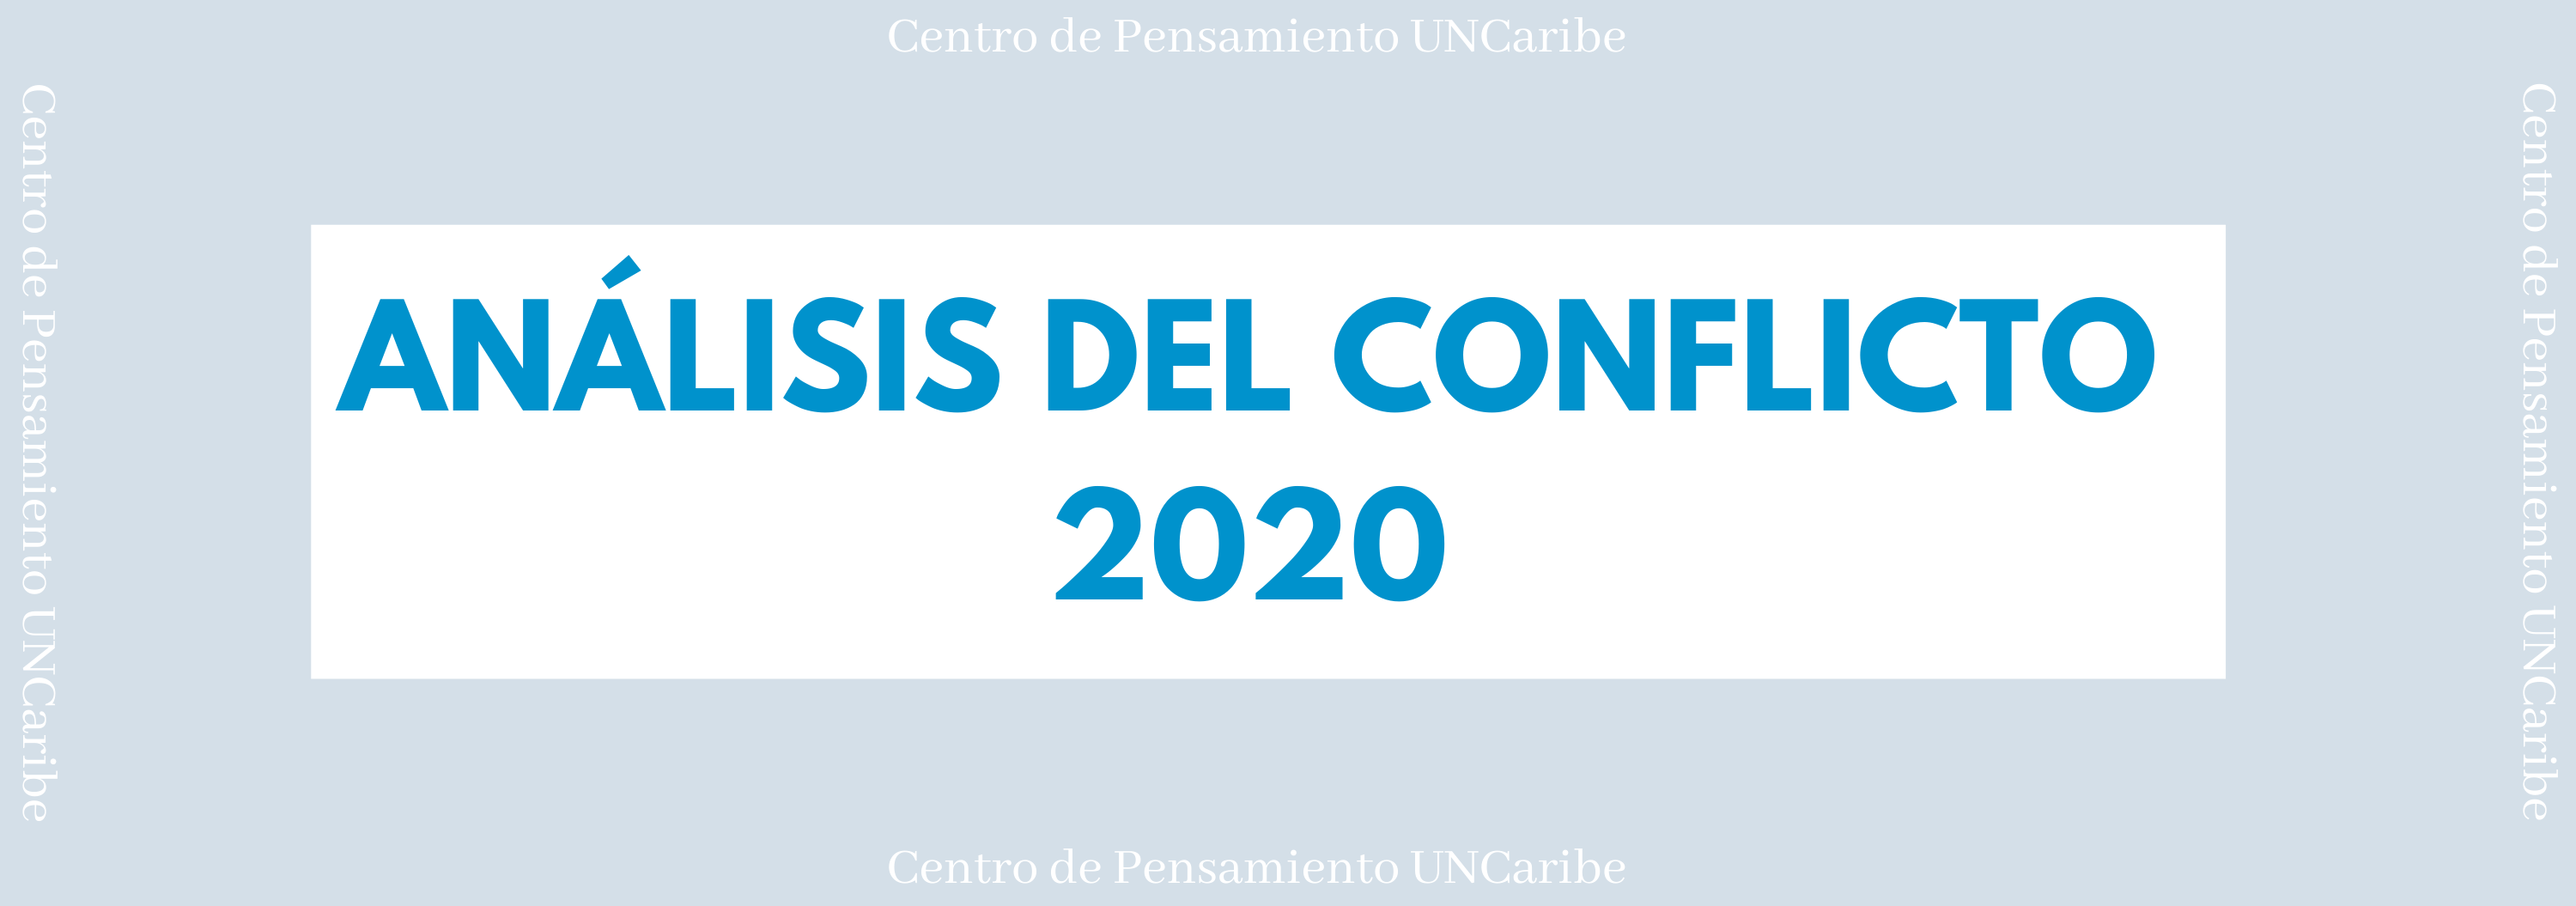 Banner análisis del conflicto 2020